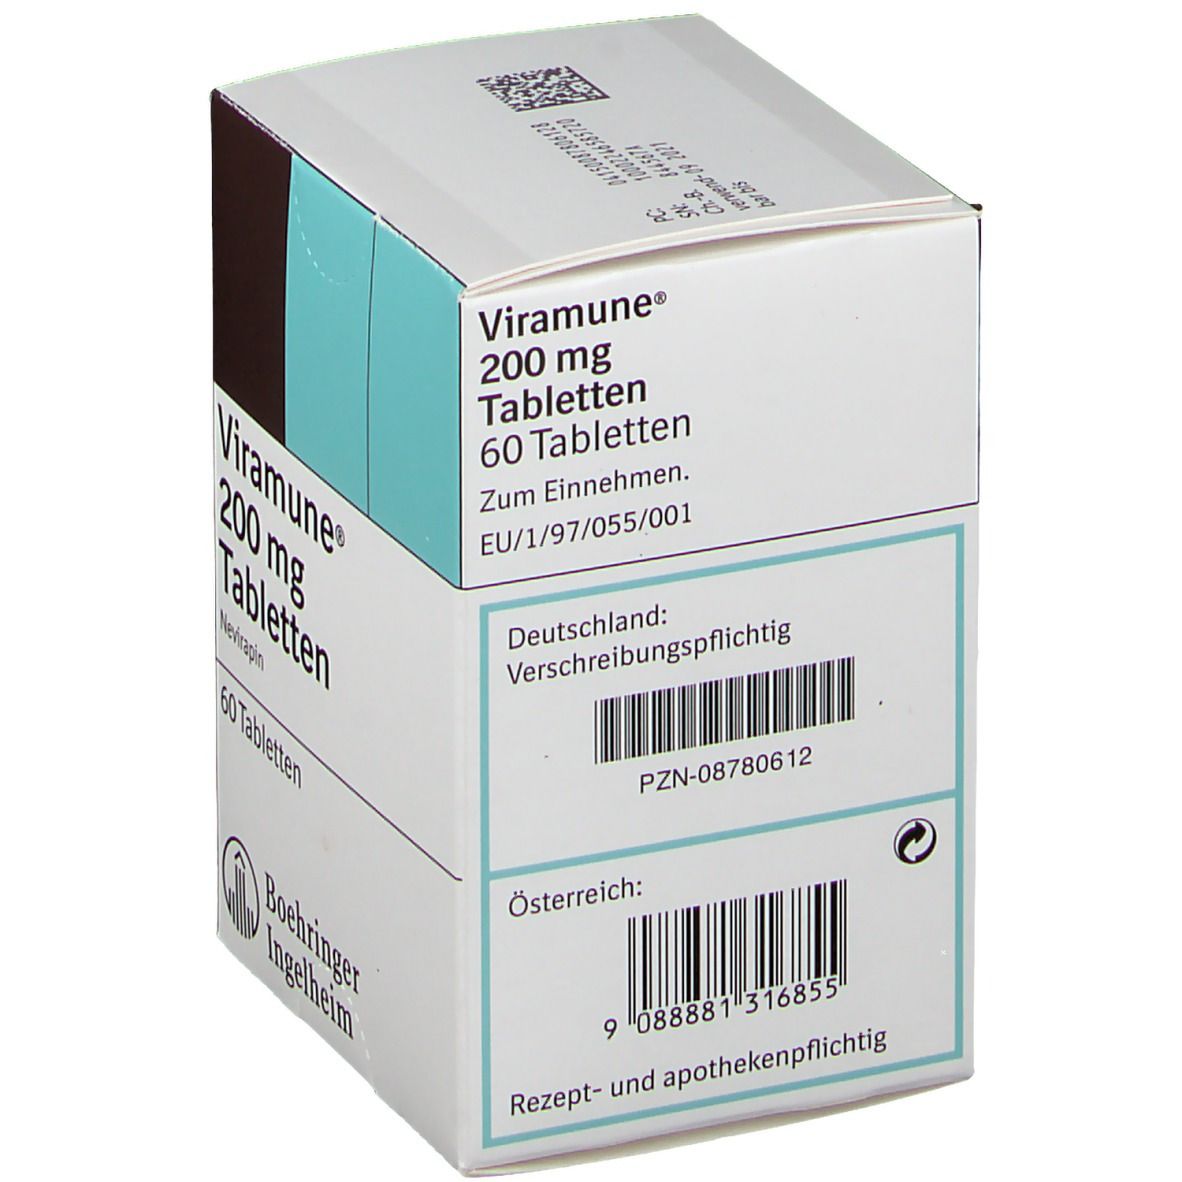 Viramune® 200 mg